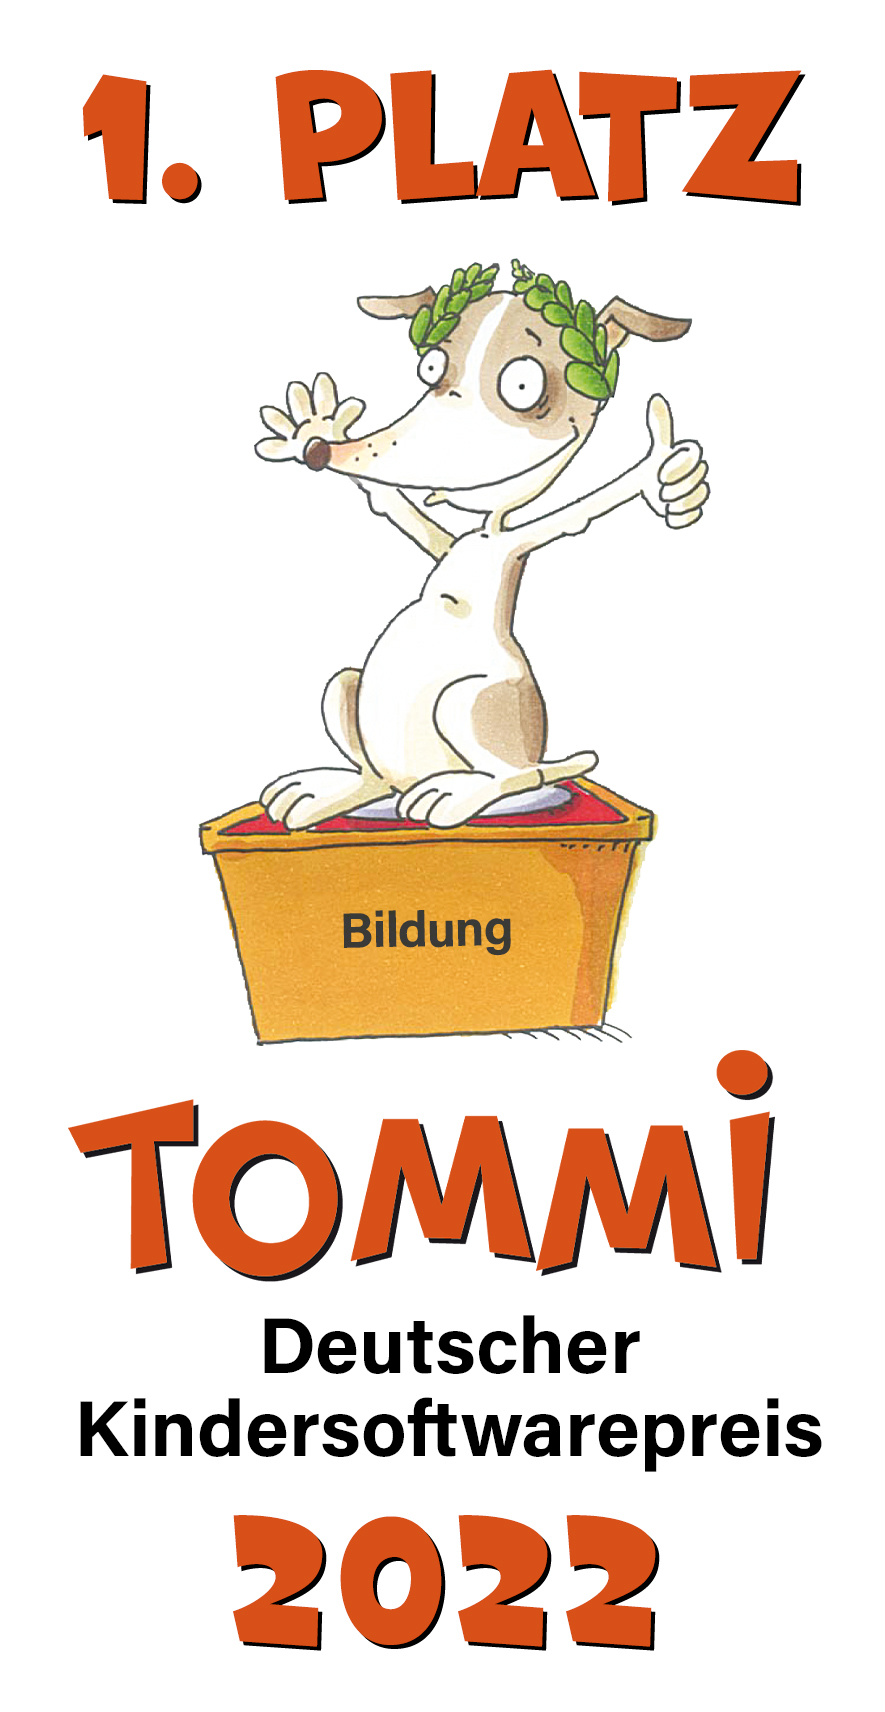 1. Platz Tommi Deutscher Kindersoftwarepreis 2022. Ein Zeichentrickhund steht auf einem Podest wo "Bildung" draufsteht. Er zeigt einen Daumen nach oben. 